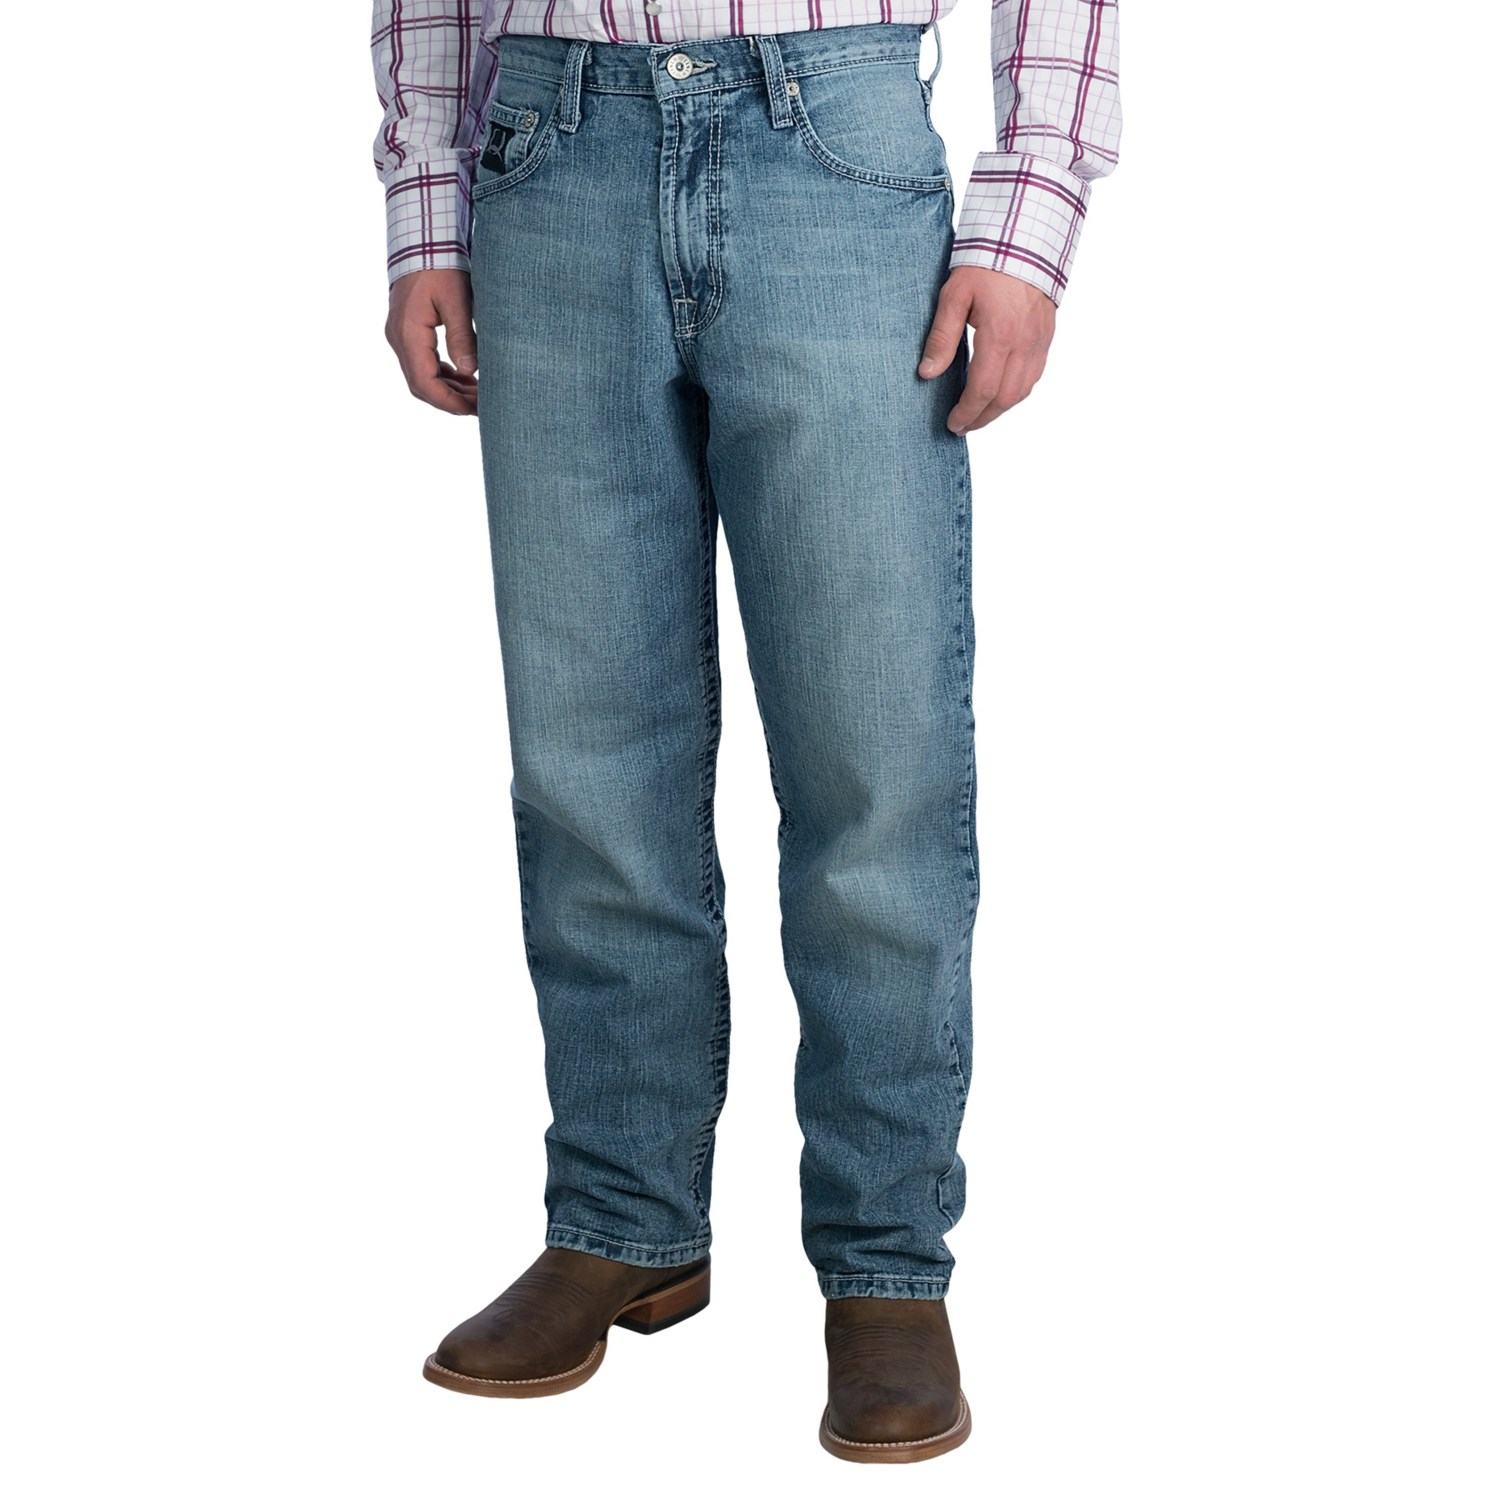 Cinch Black Label 2.0 Jeans (For Men) 8436F - Save 65%